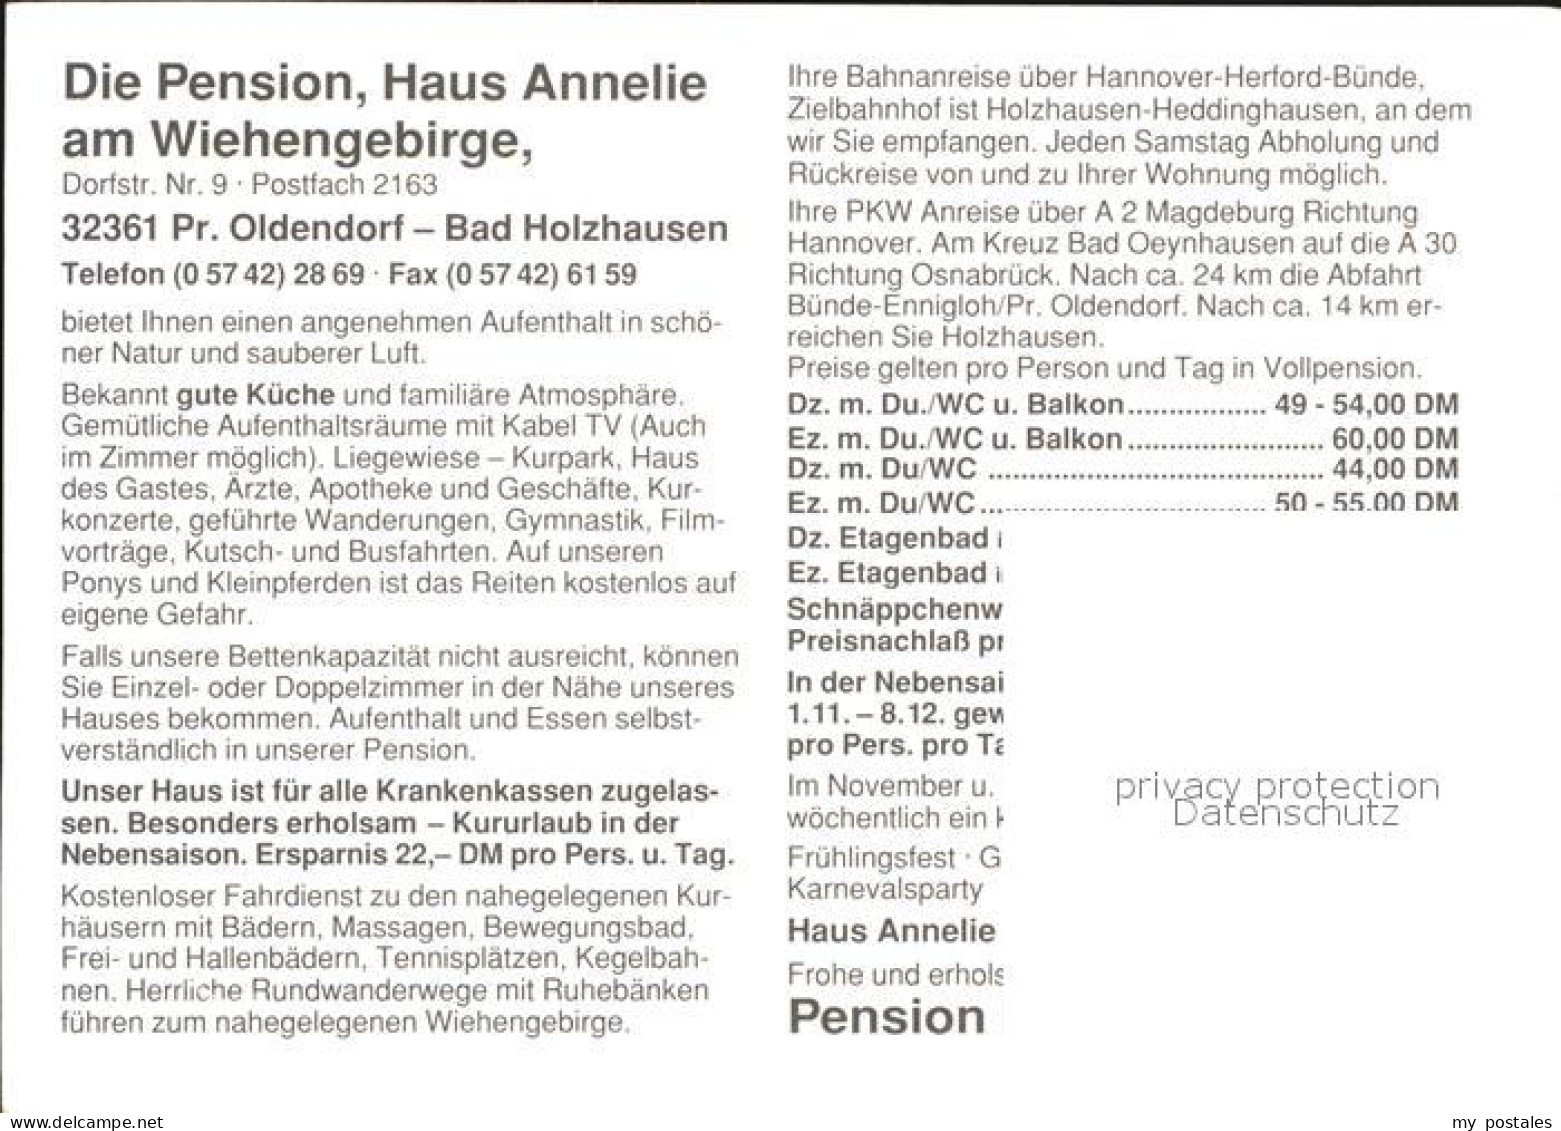 72557375 Bad Holzhausen Luebbecke Preussisch Oldendorf Pension Haus Annelie Wieh - Getmold